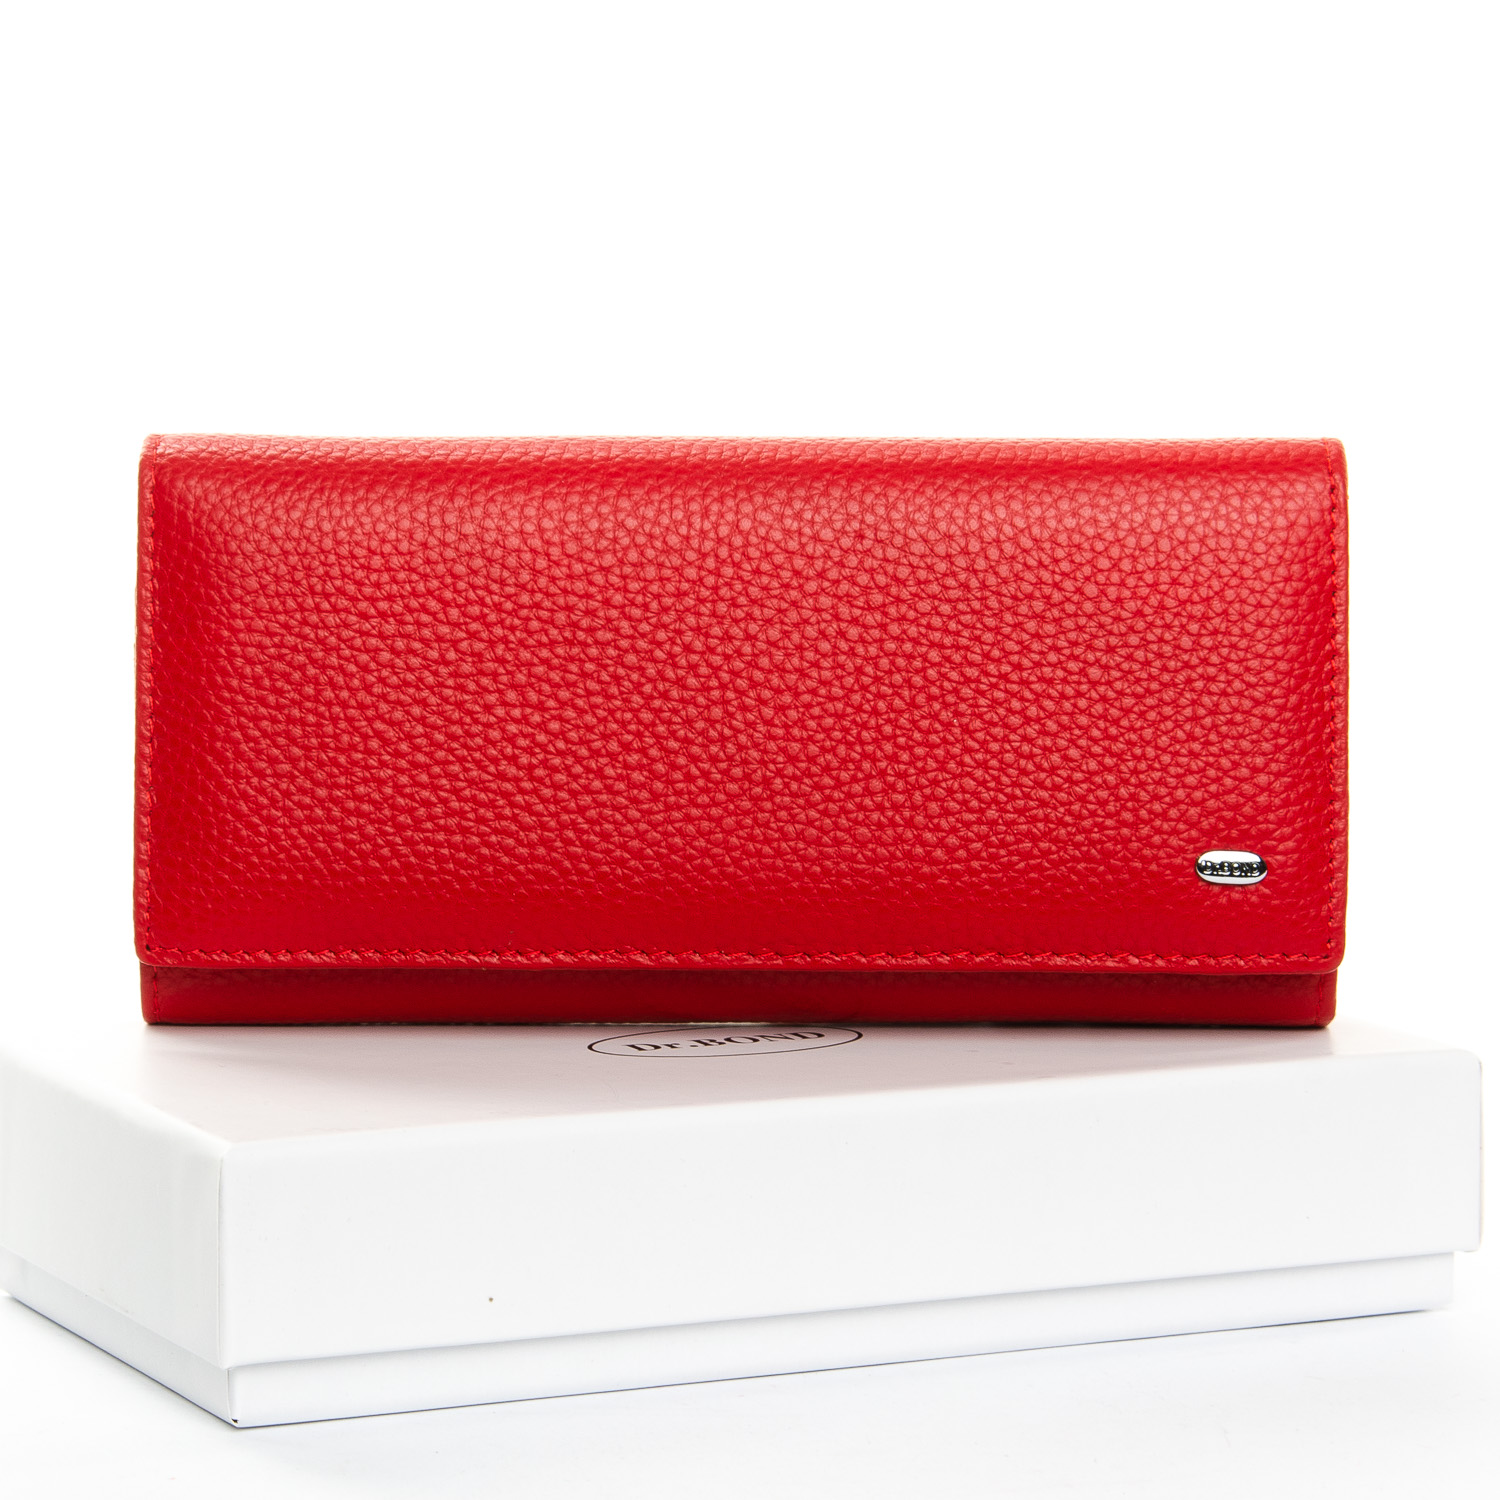 Красный кожаный женский кошелек DR. BOND W501 red